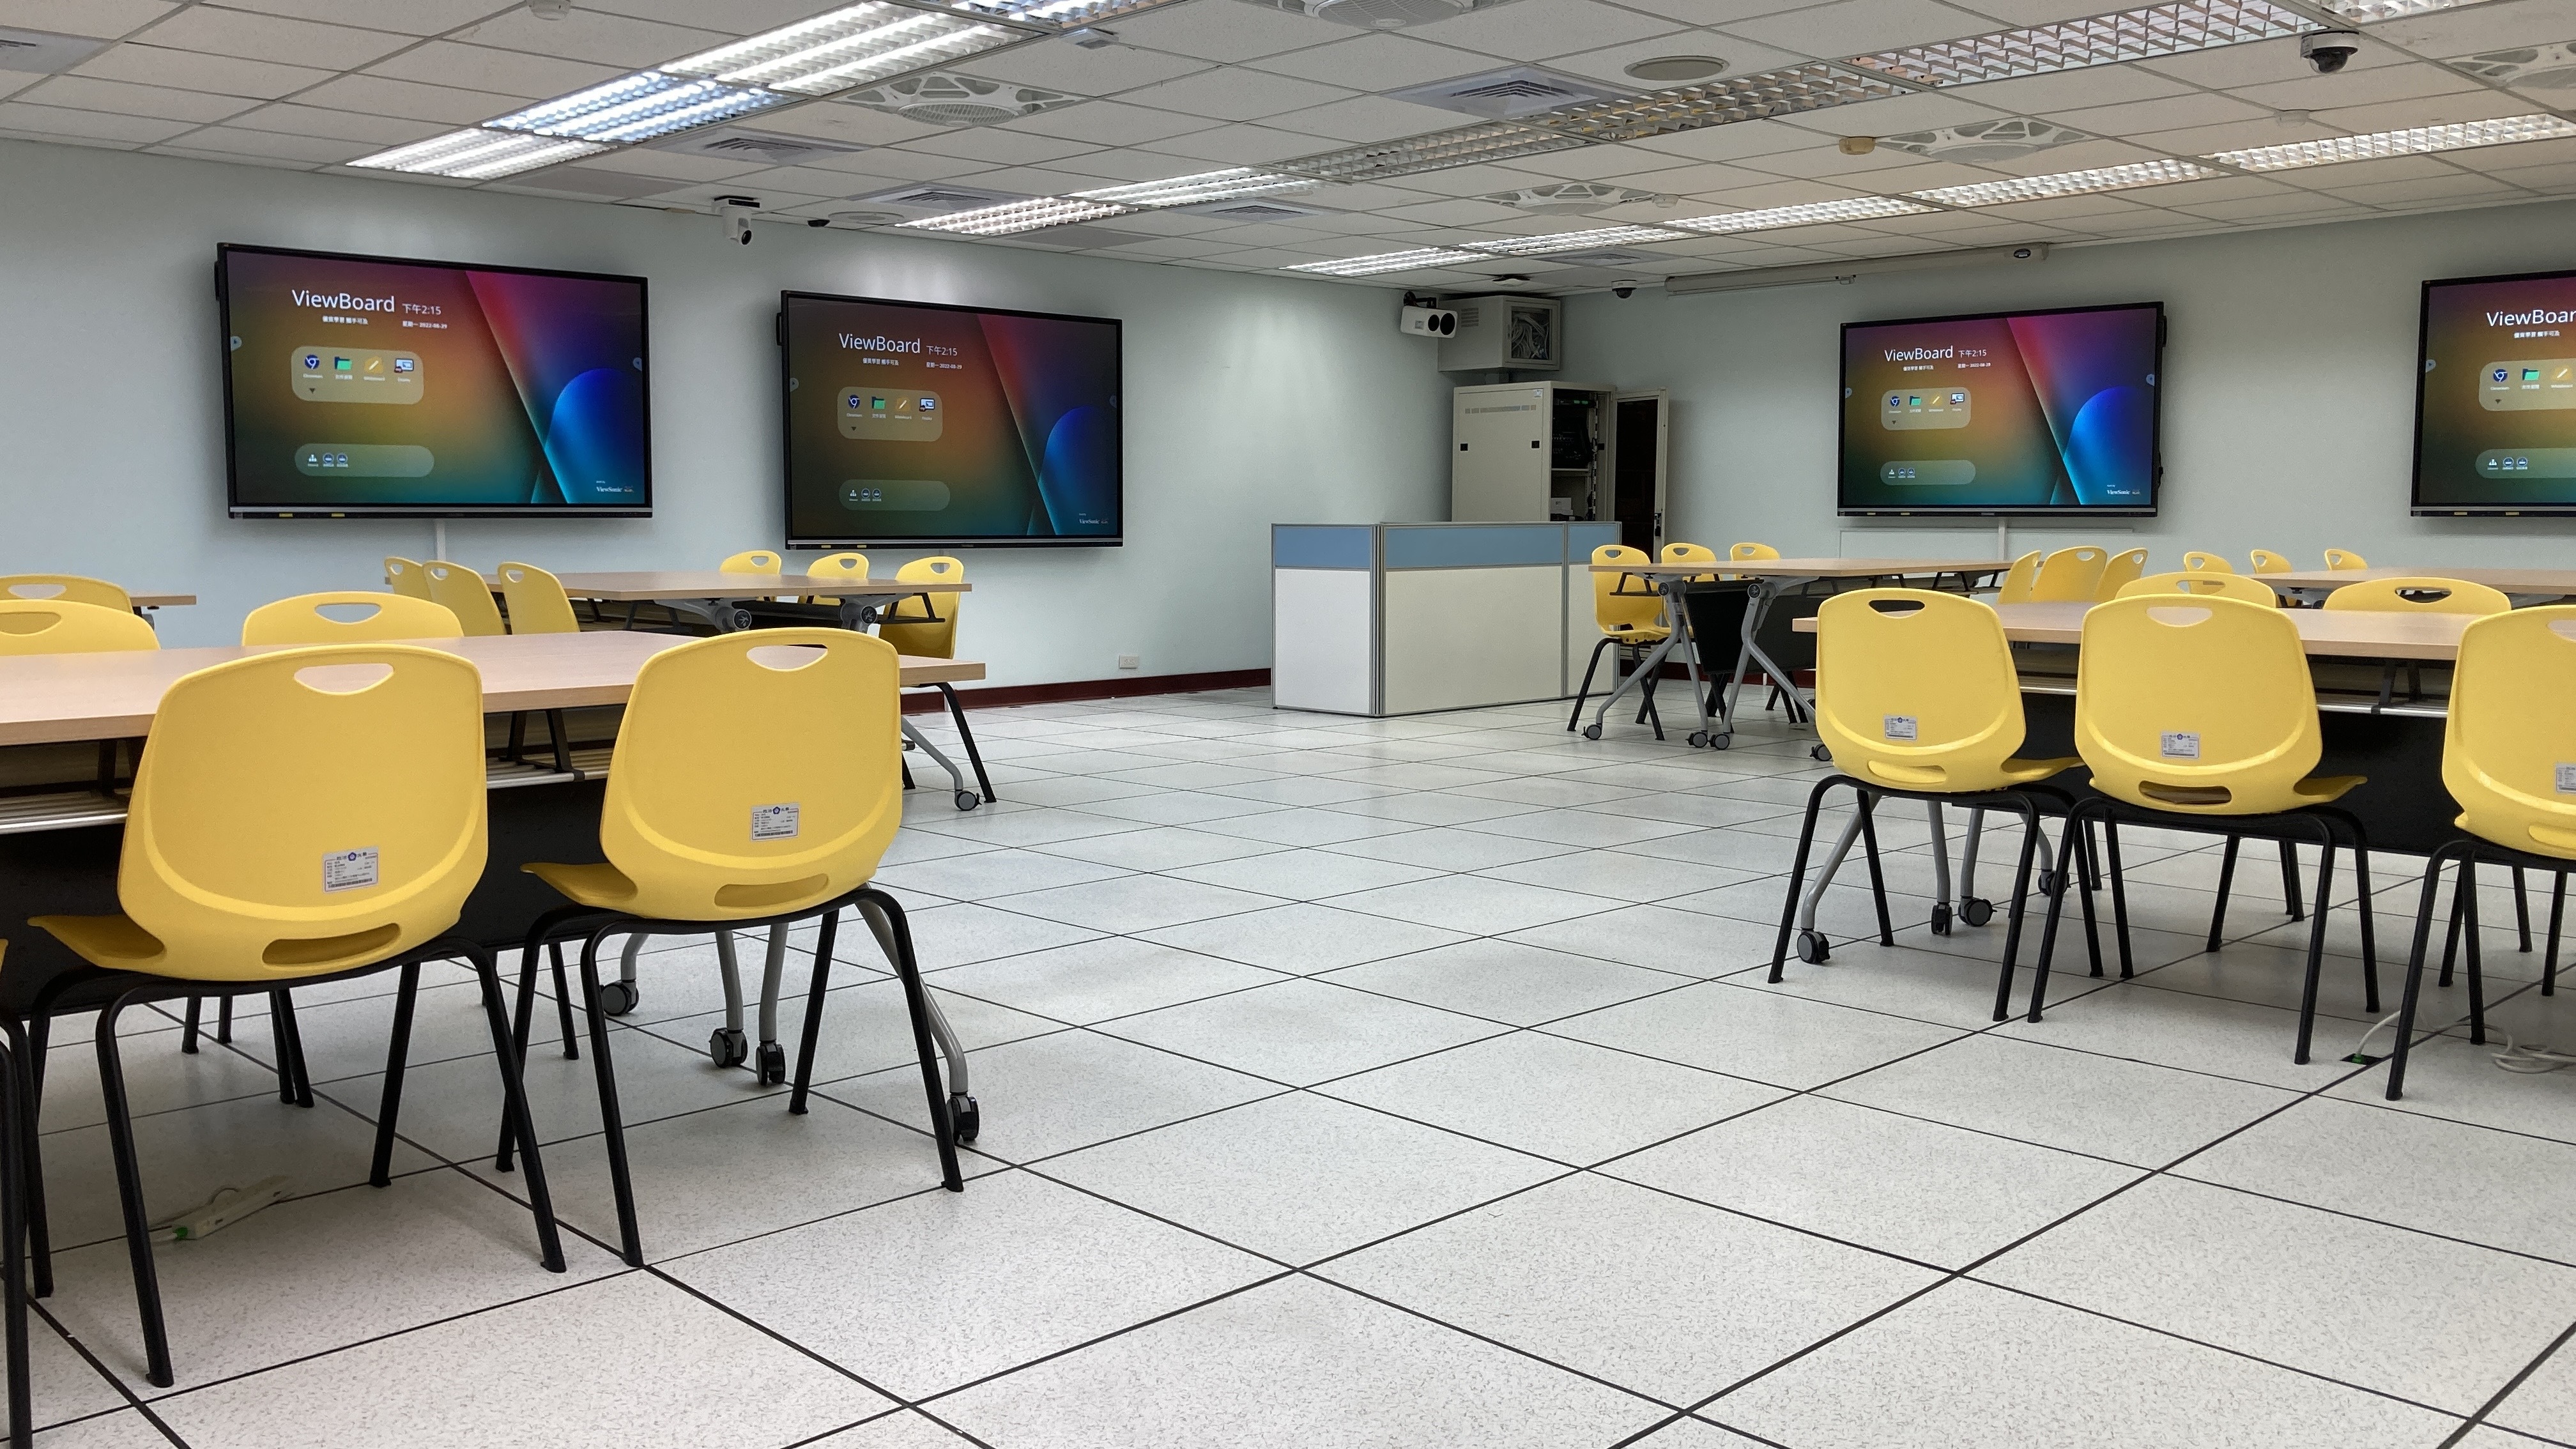 62.【學習熱情】110年建置高效能網路設備與空間，優化校園數位教學環境